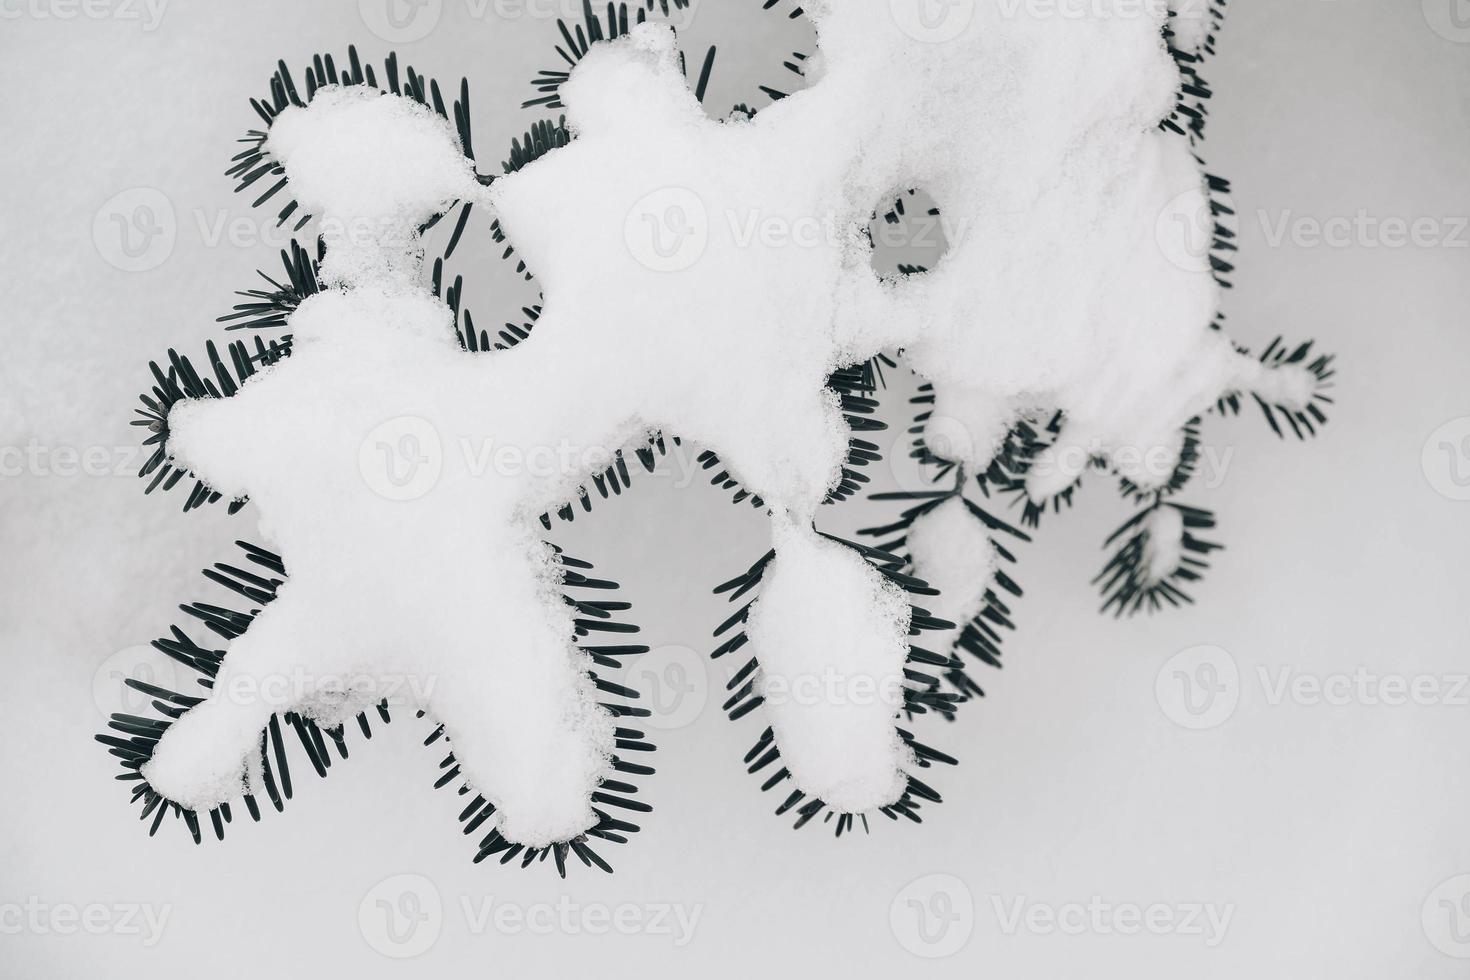 pijnboomtakken bedekt met sneeuw op een besneeuwde achtergrond. bovenaanzicht. kopiëren, lege ruimte voor tekst foto